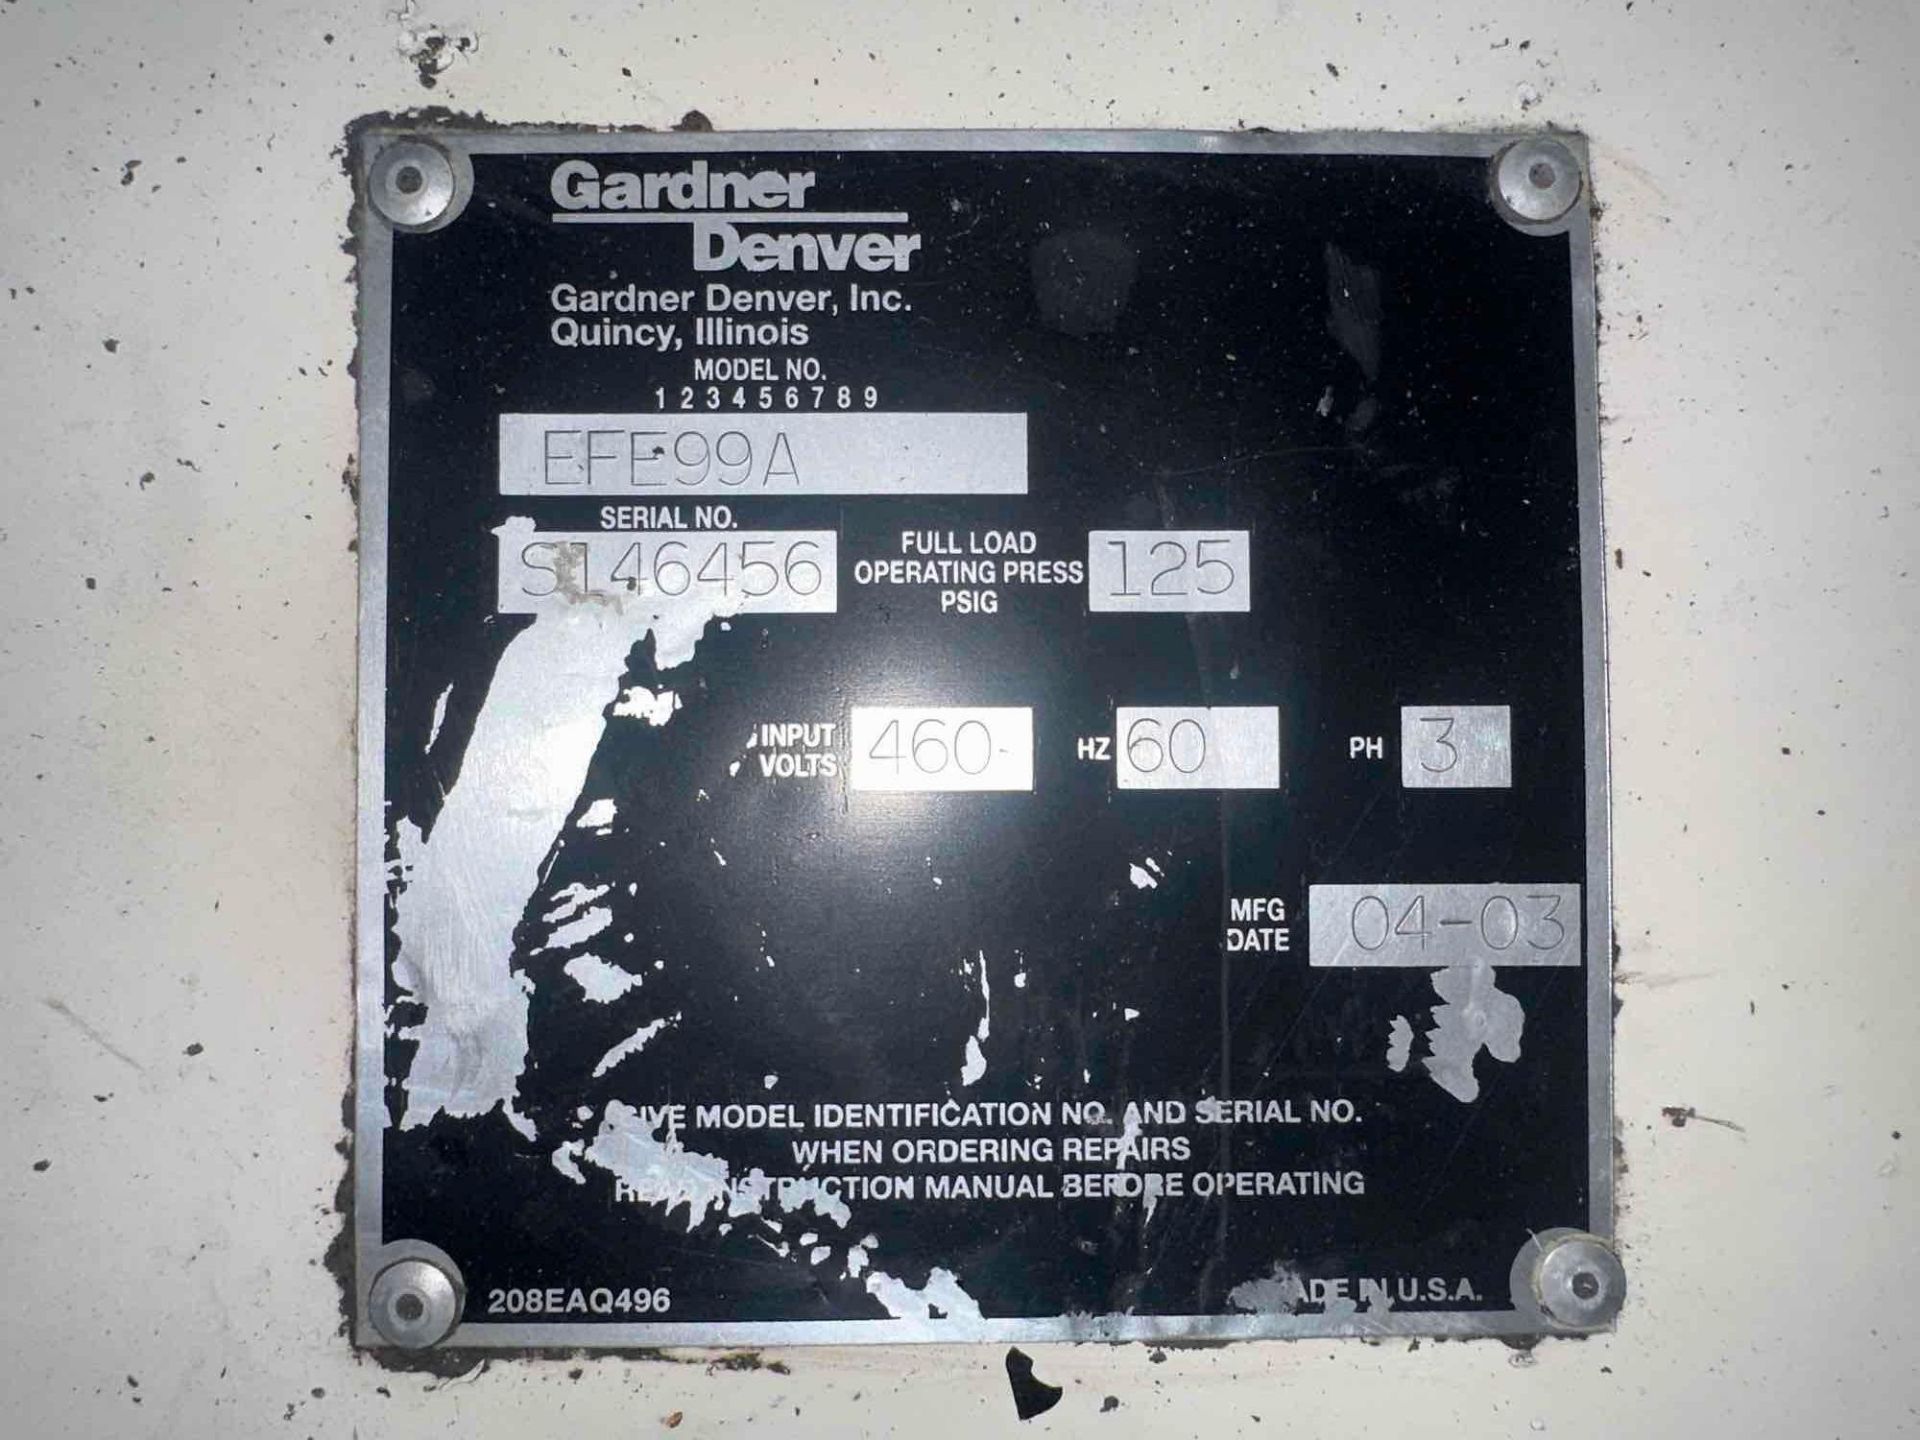 GARDNER DENVER EFE99A COMPRESSOR, 75HP, 125PSI, 460V, Air Cooled, S/N S146456, Year 2003 - Image 5 of 5